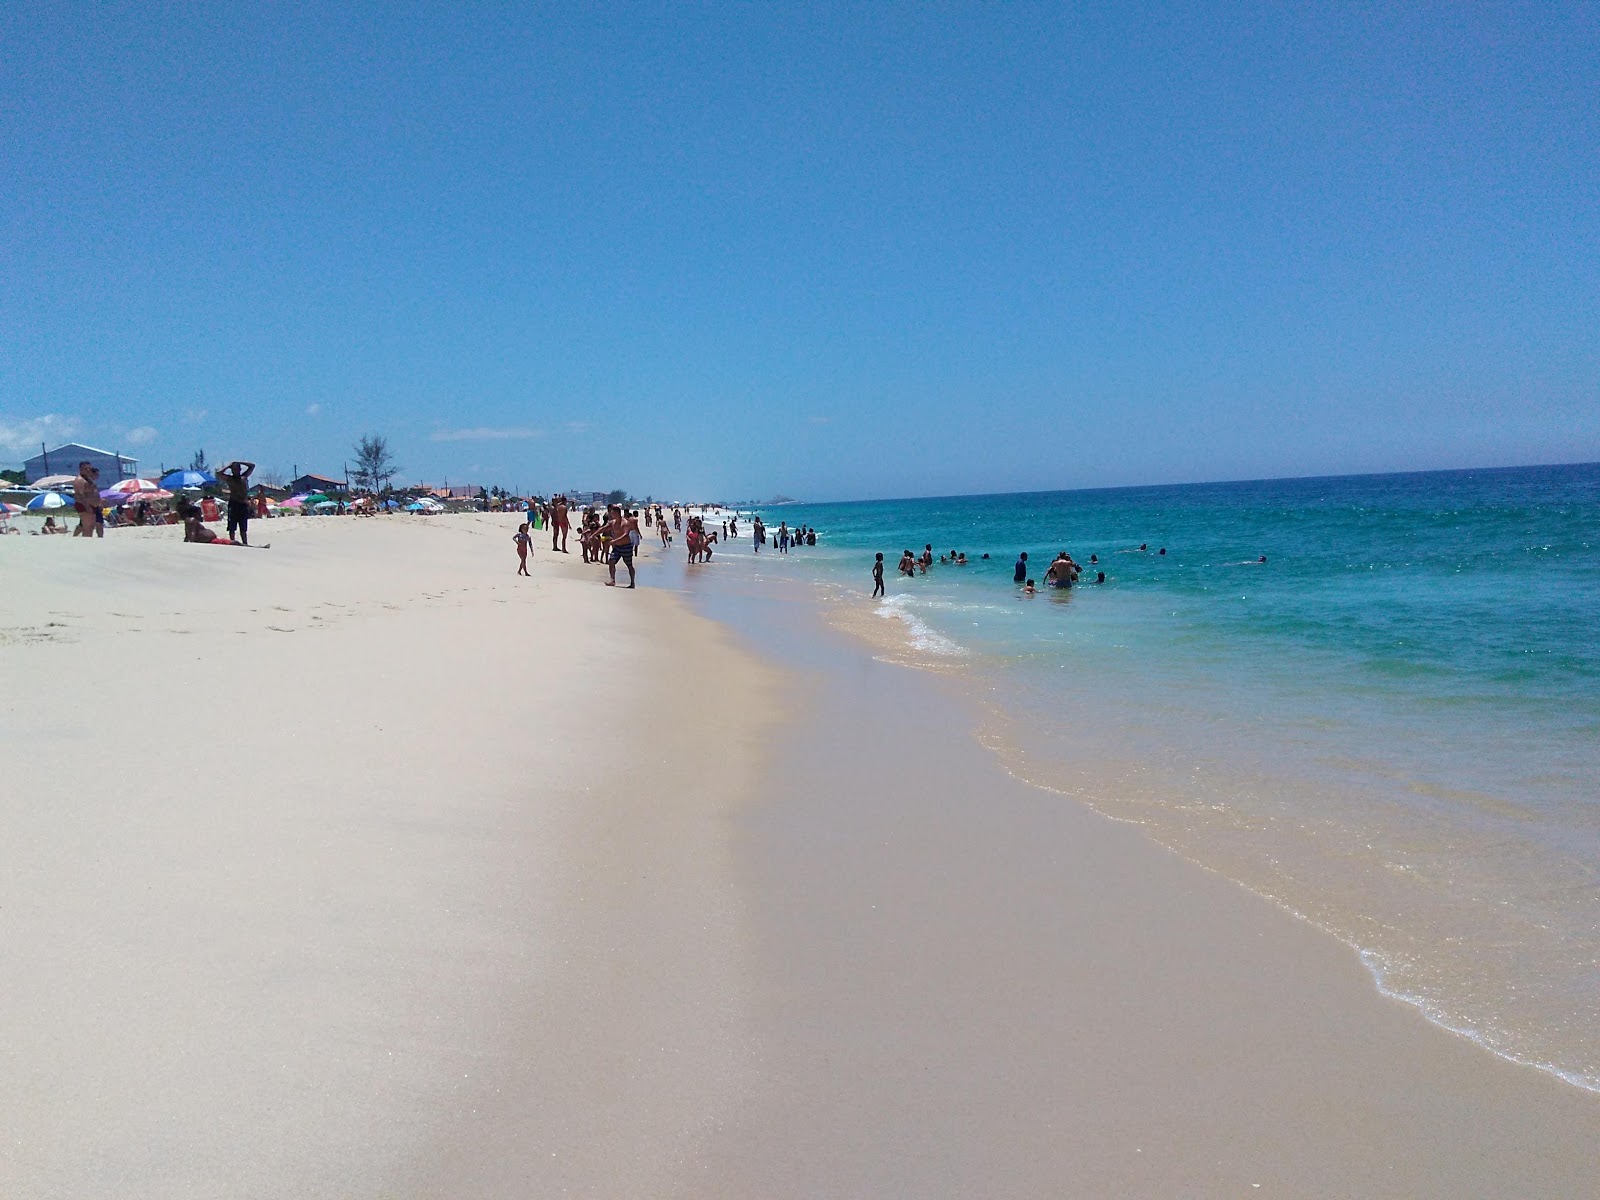 Praia de Barra Nova'in fotoğrafı parlak kum yüzey ile